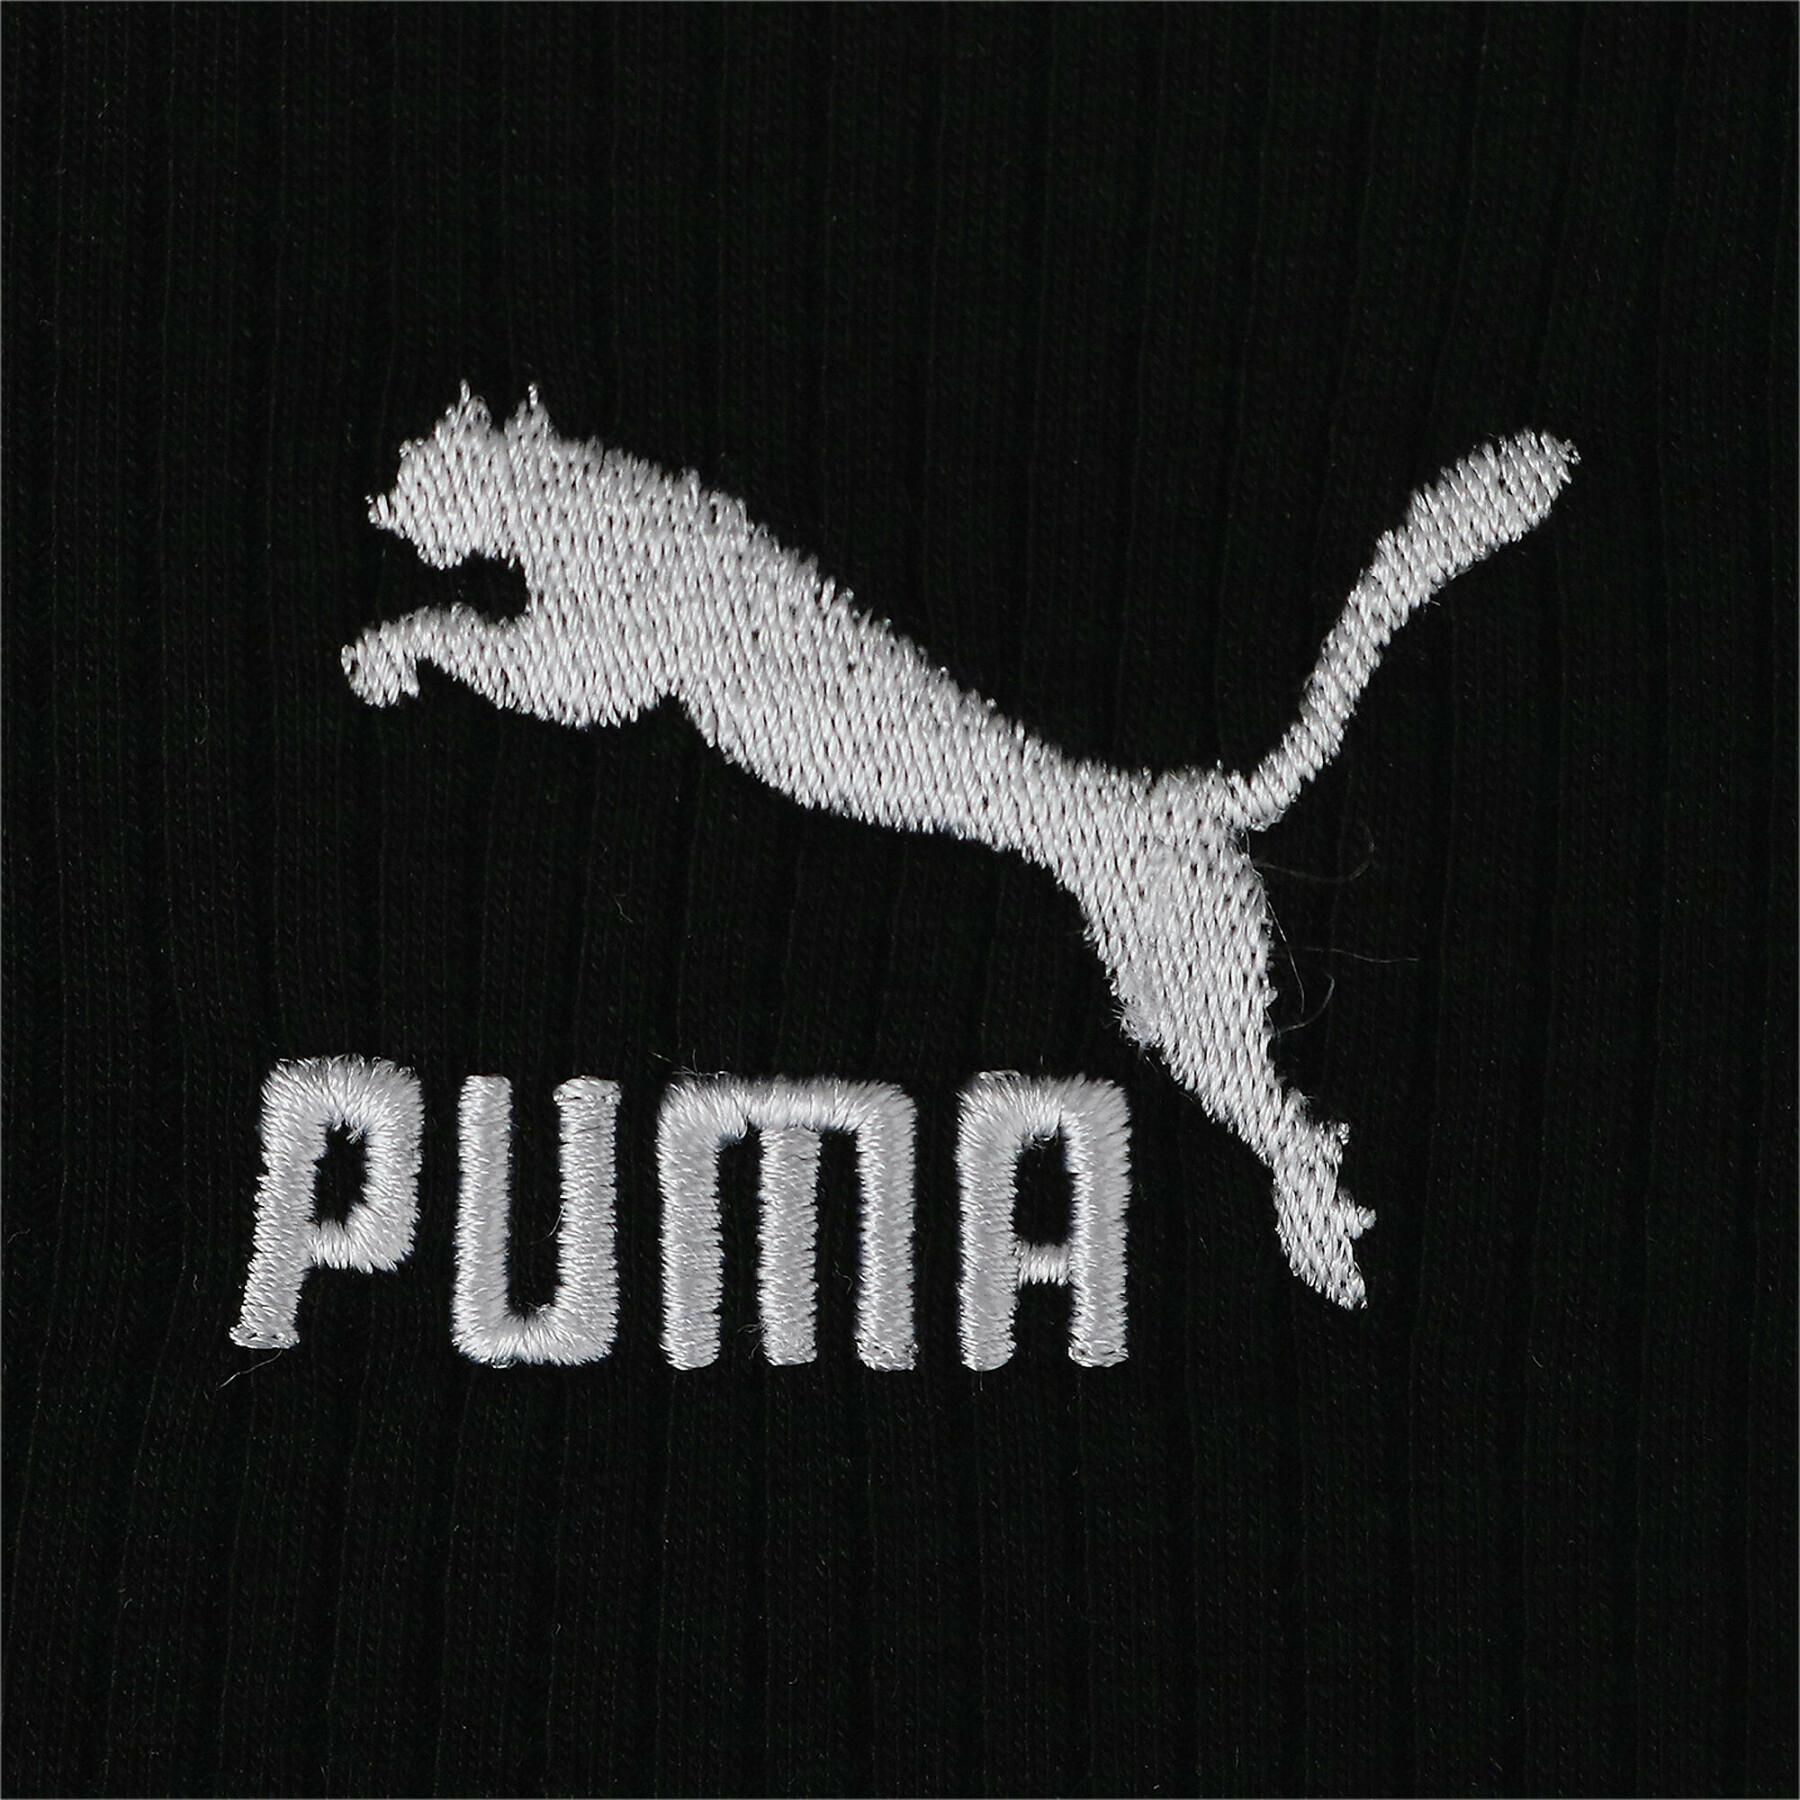 Vestido de t-shirt feminino Puma